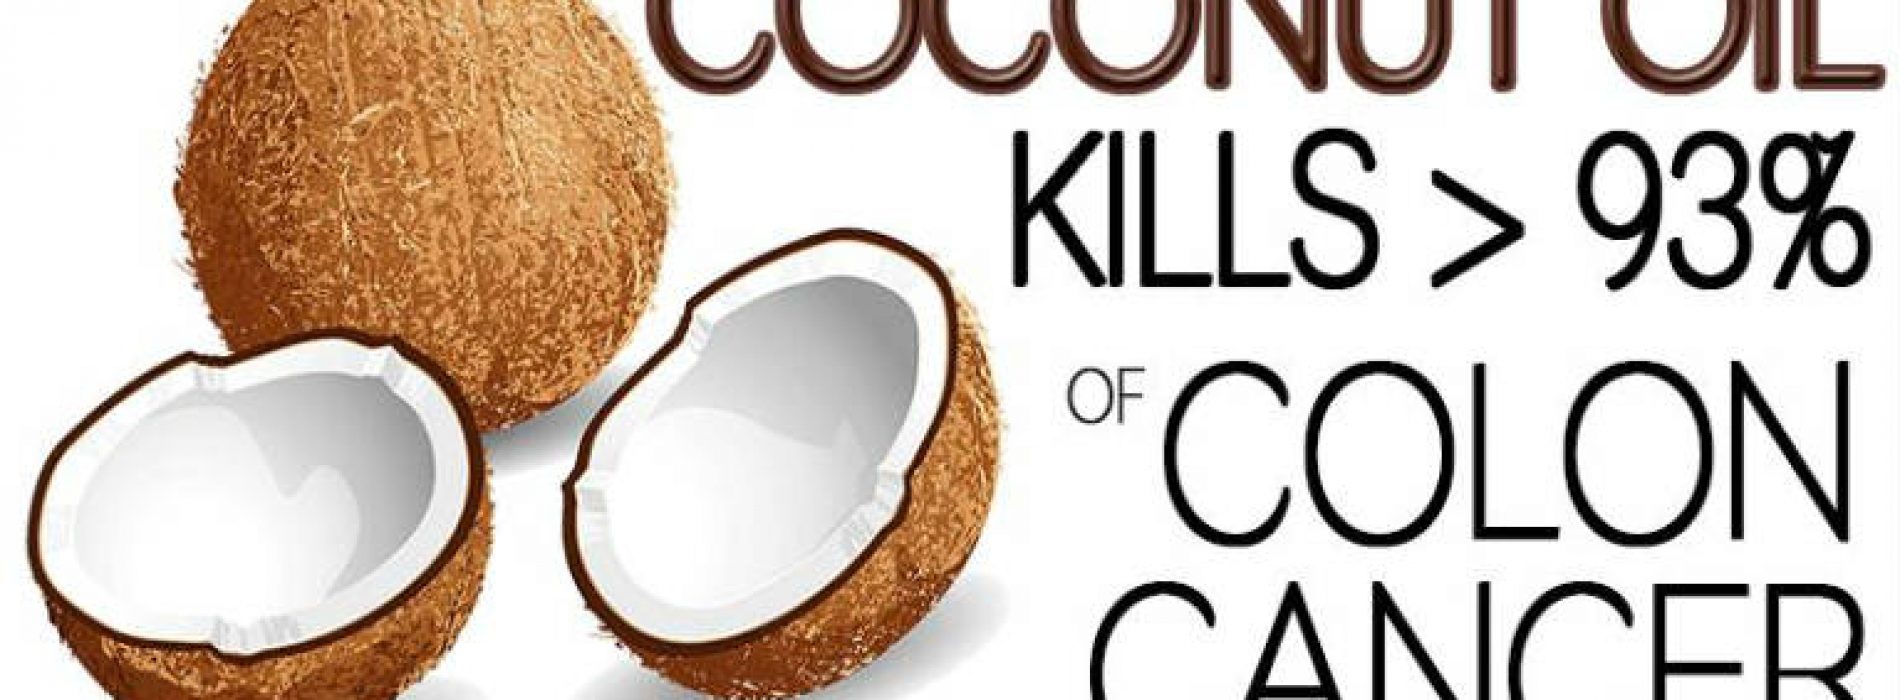 Zelfs artsen zijn geschokt: kokosolie doodt 93% van de kankercellen in de dikke darm! (VIDEO)